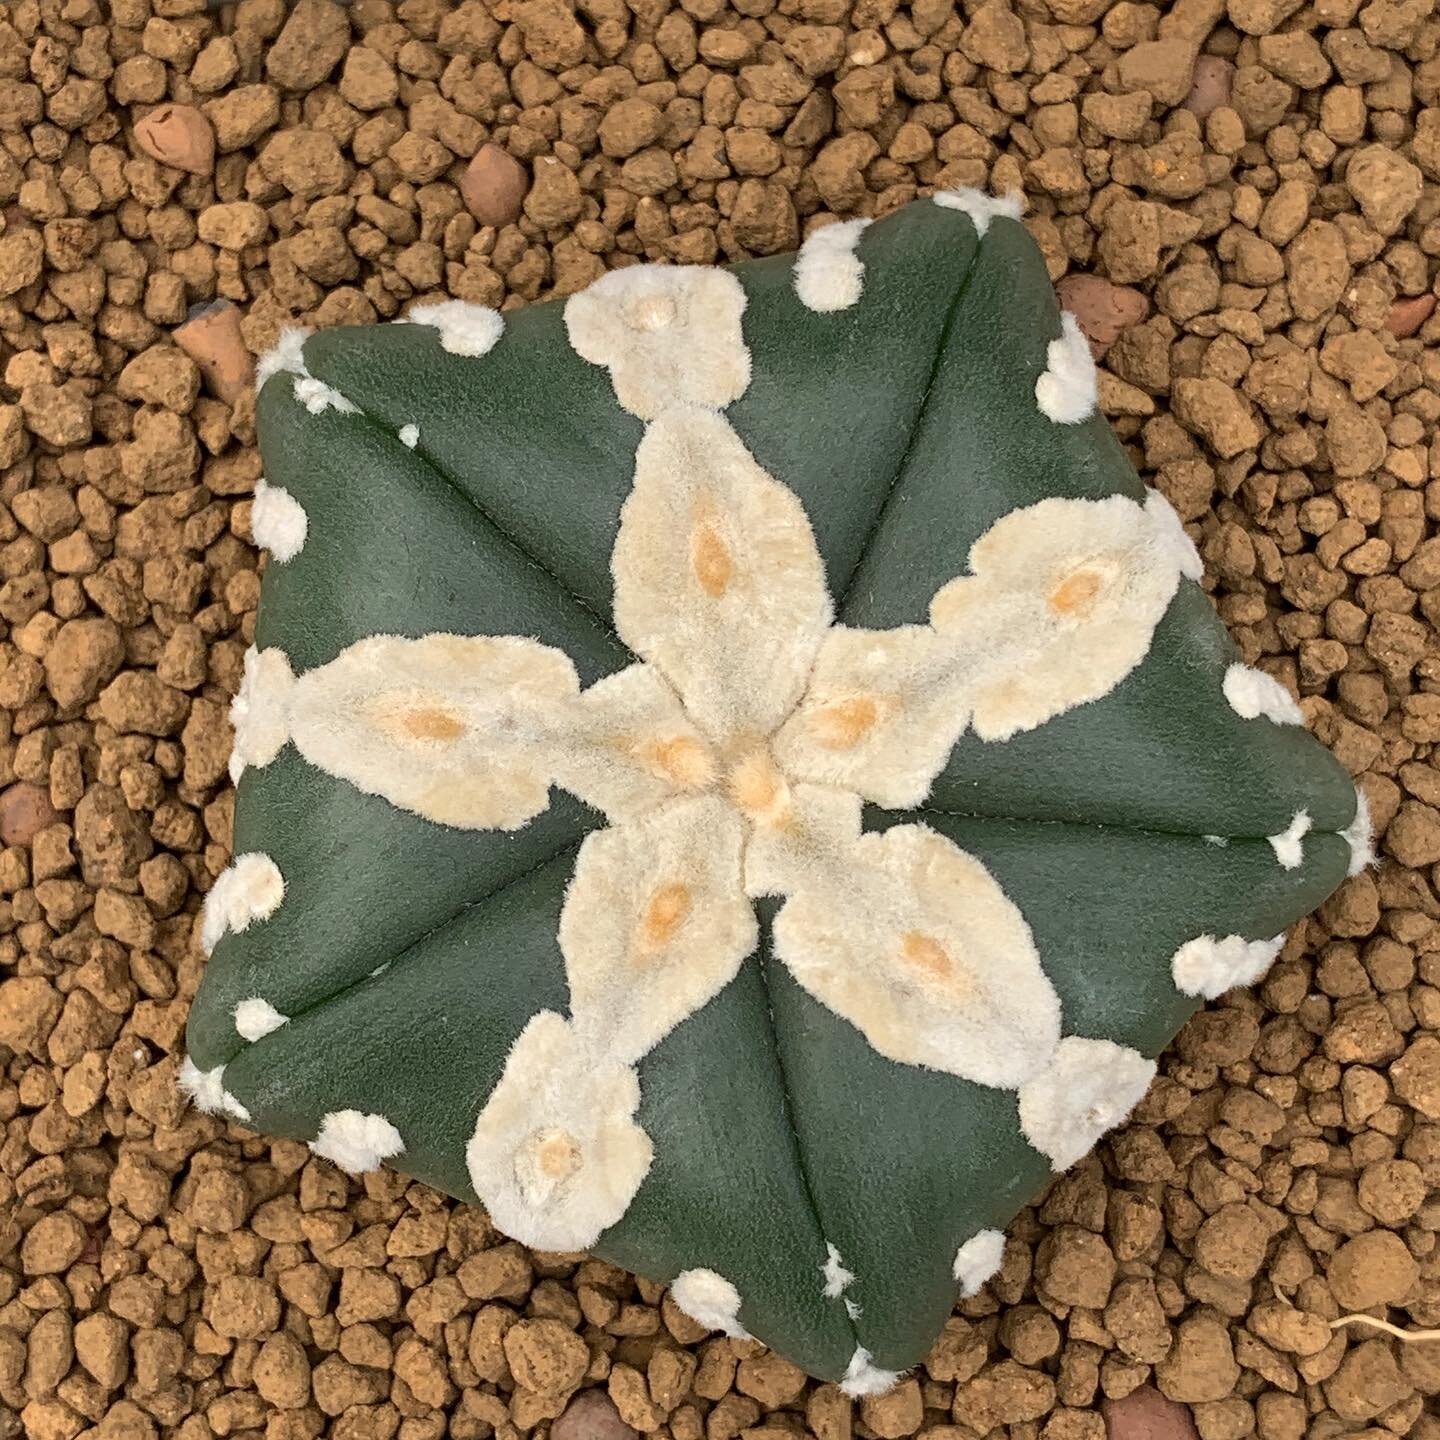 Amazing seedling 
#Astrophytumasterias #cactus #cati #saturdayssucculents